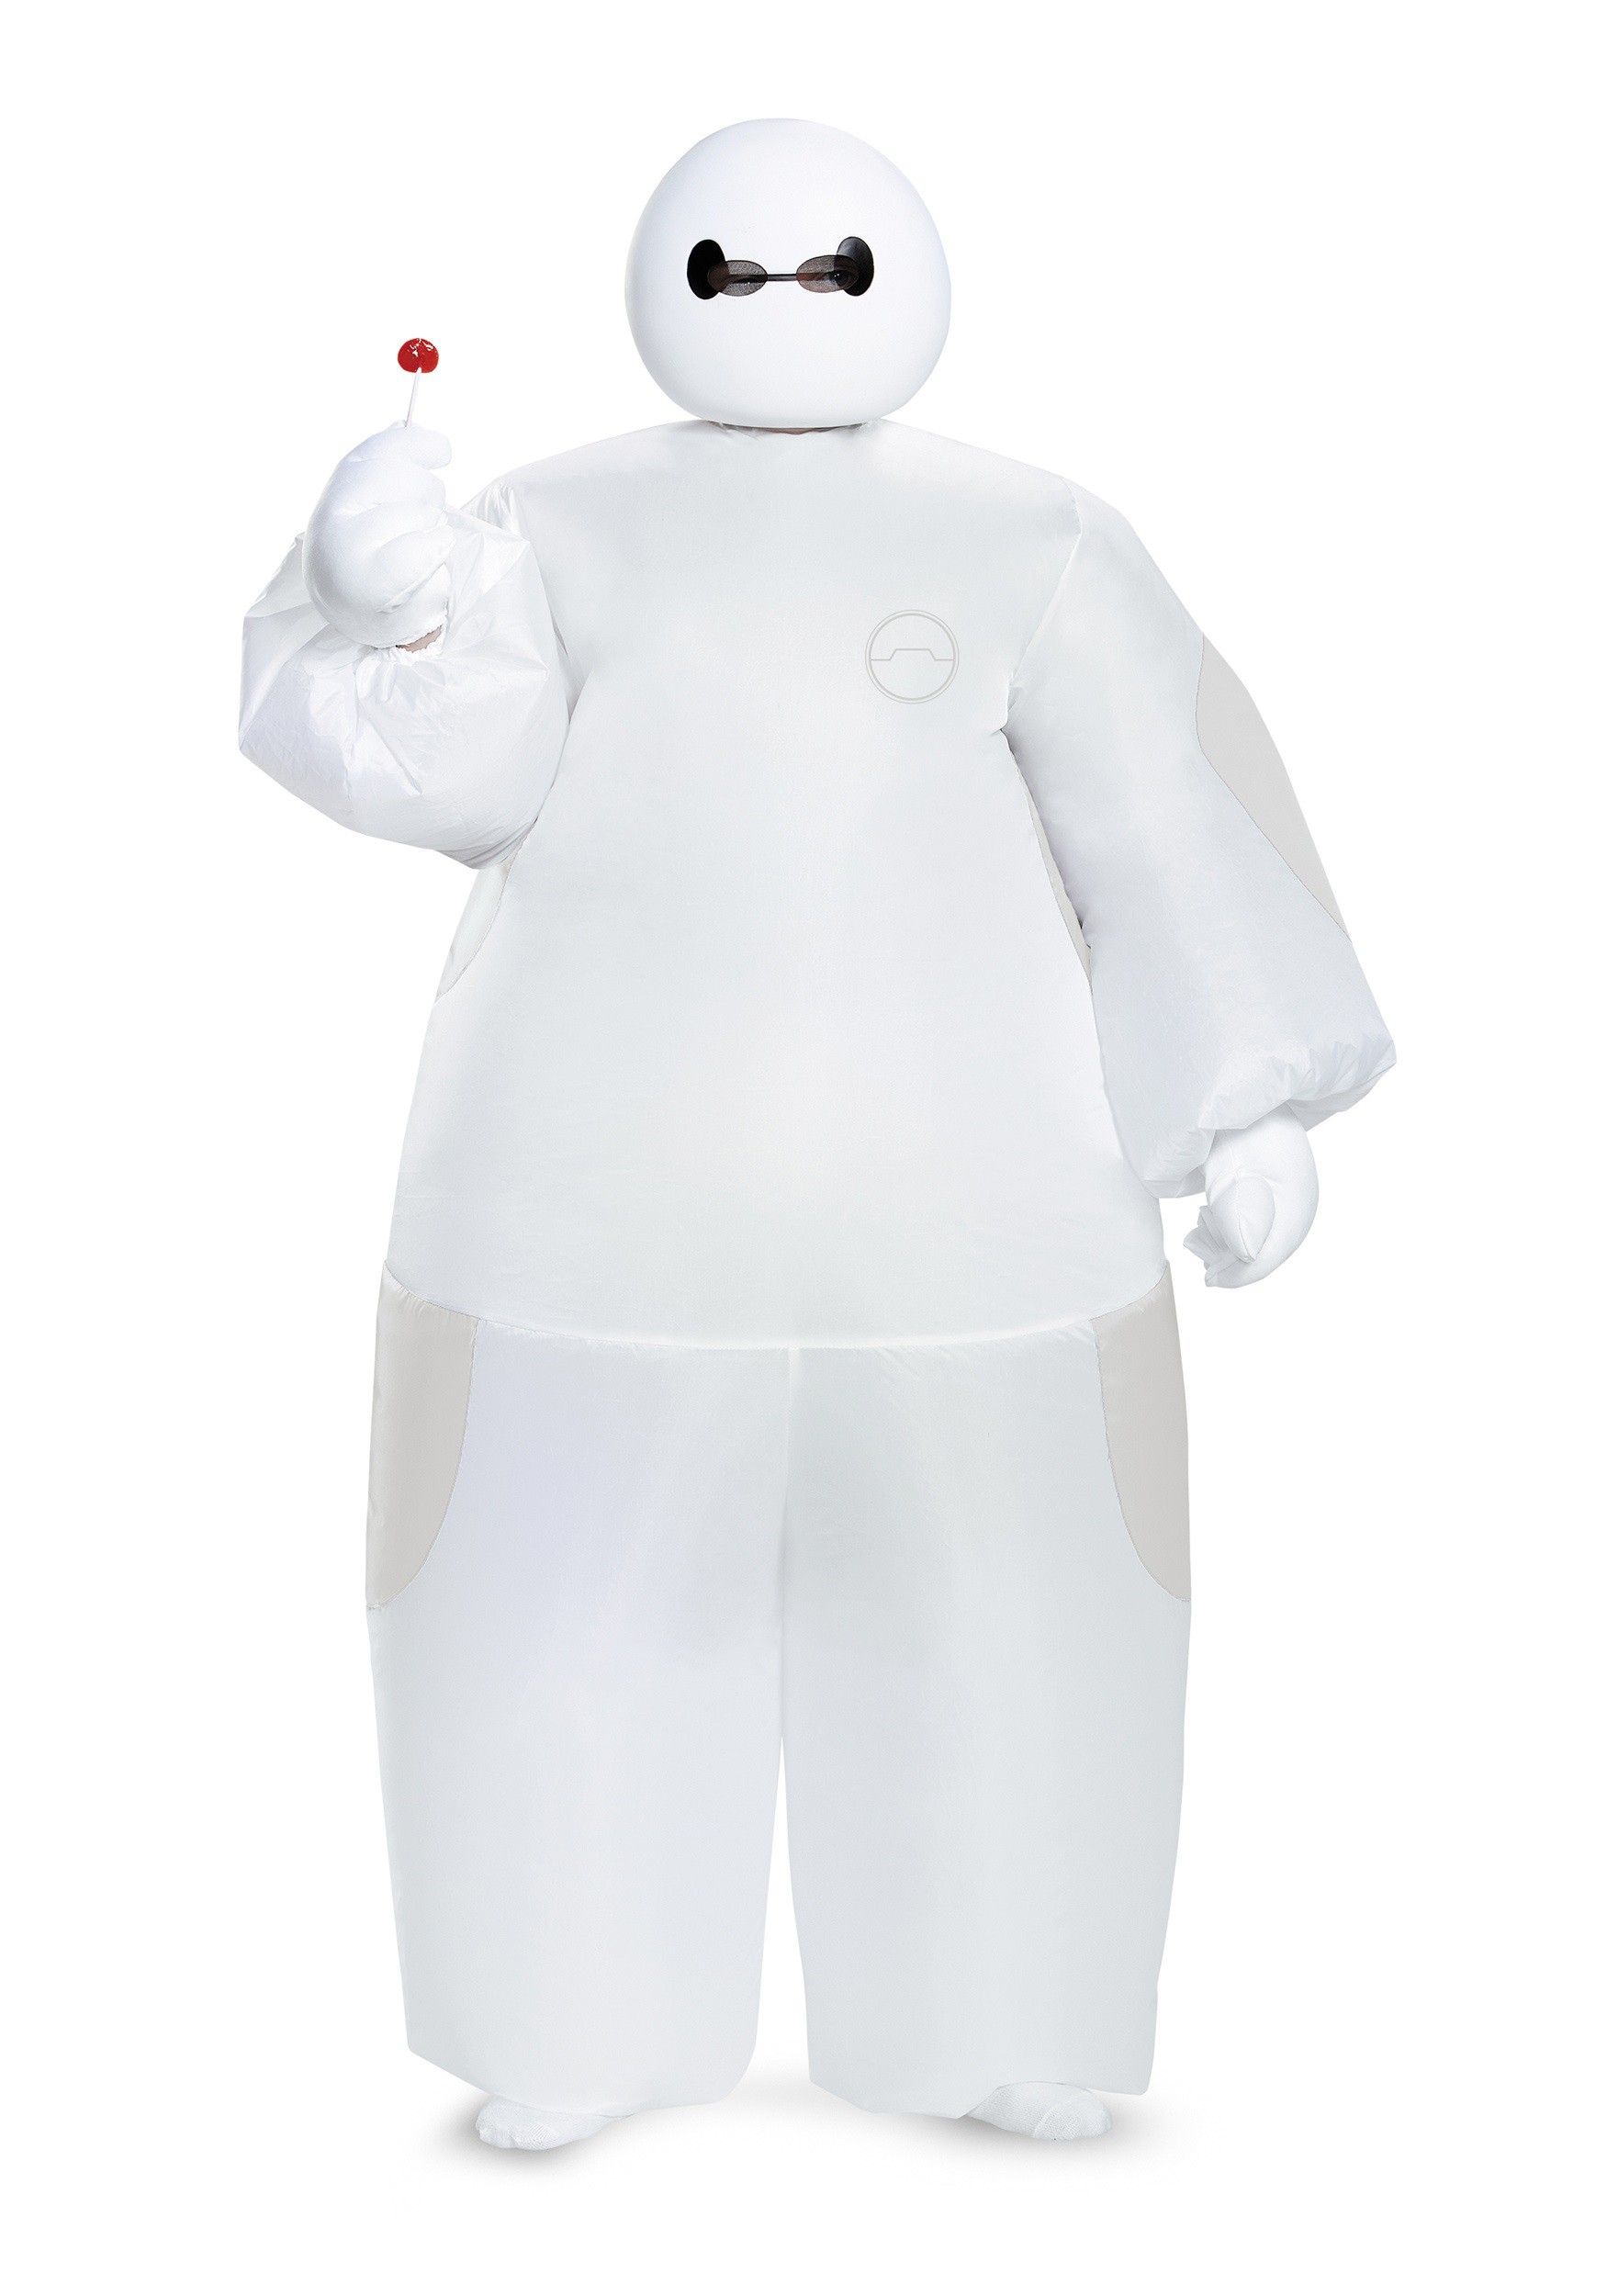 Kid’s White Big Hero 6 Baymax Inflatable Costume